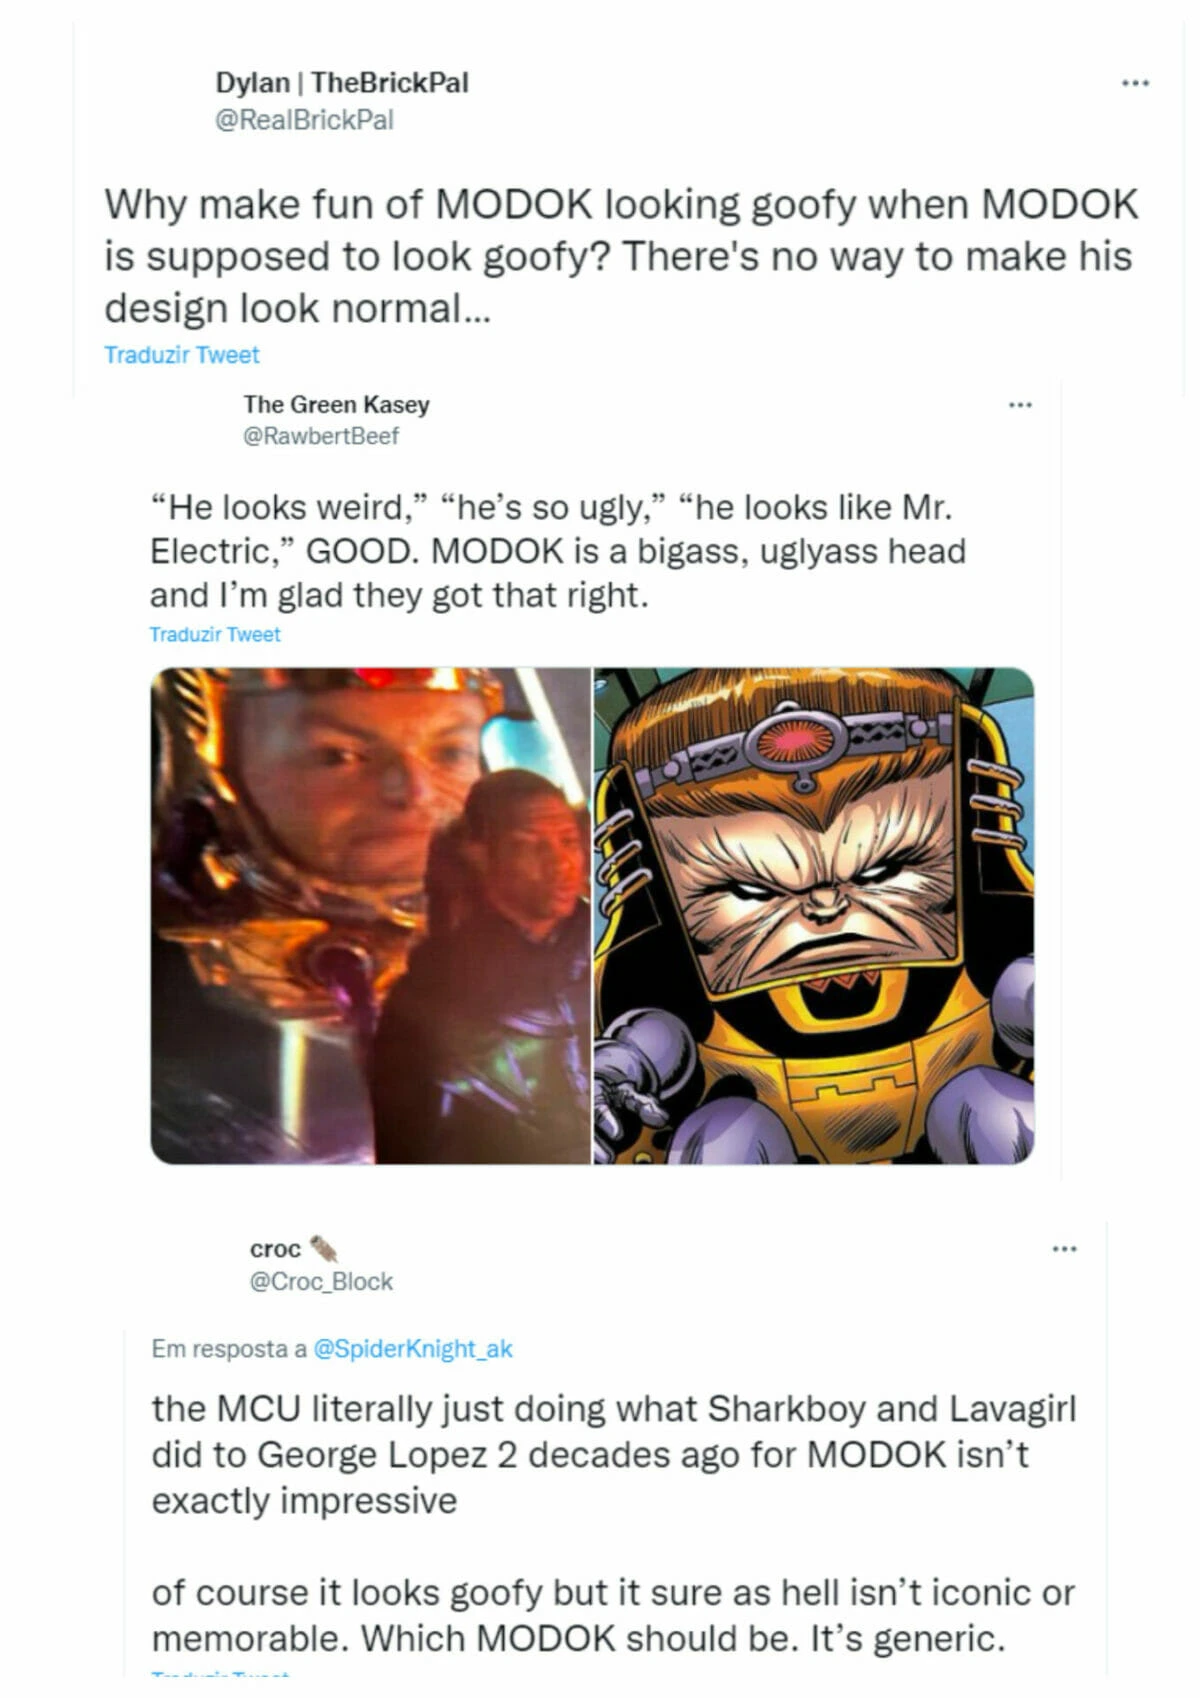 Homem-Formiga 3: Fan art de MODOK supera o CGI do personagem original